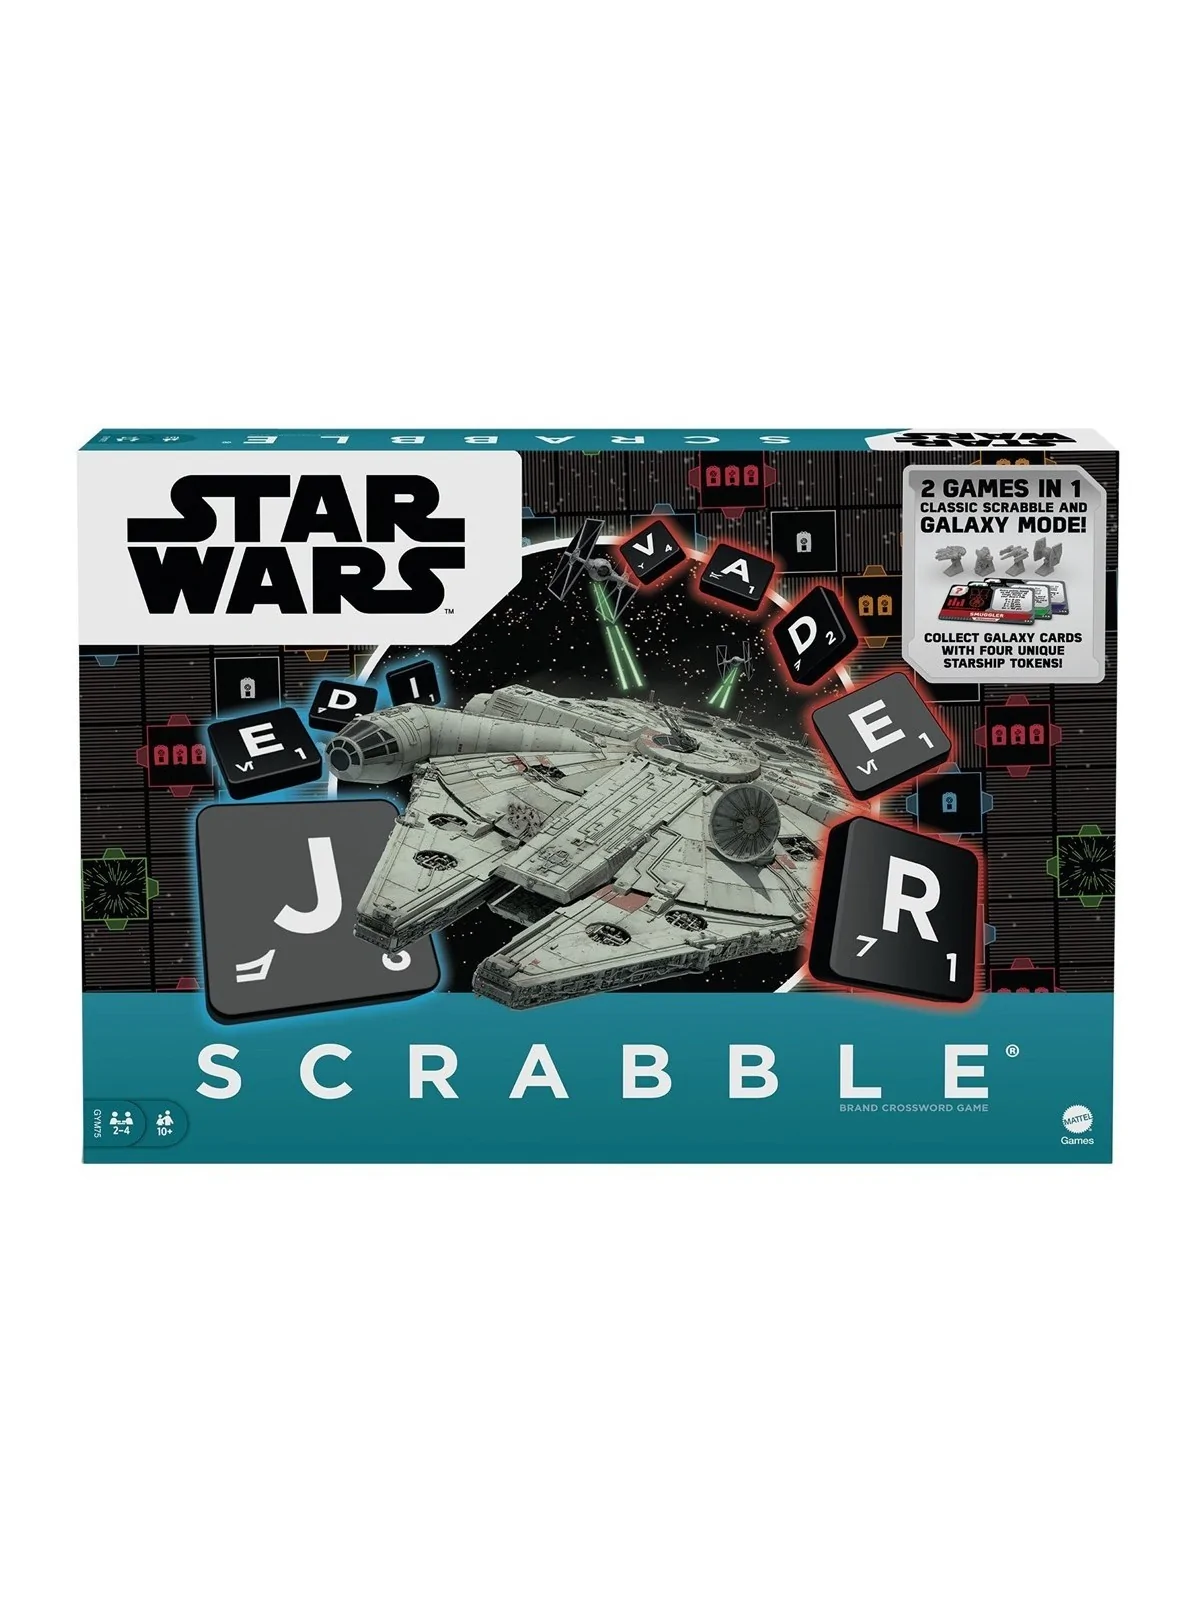 Comprar Scrabble Star Wars barato al mejor precio 25,41 € de Mattel